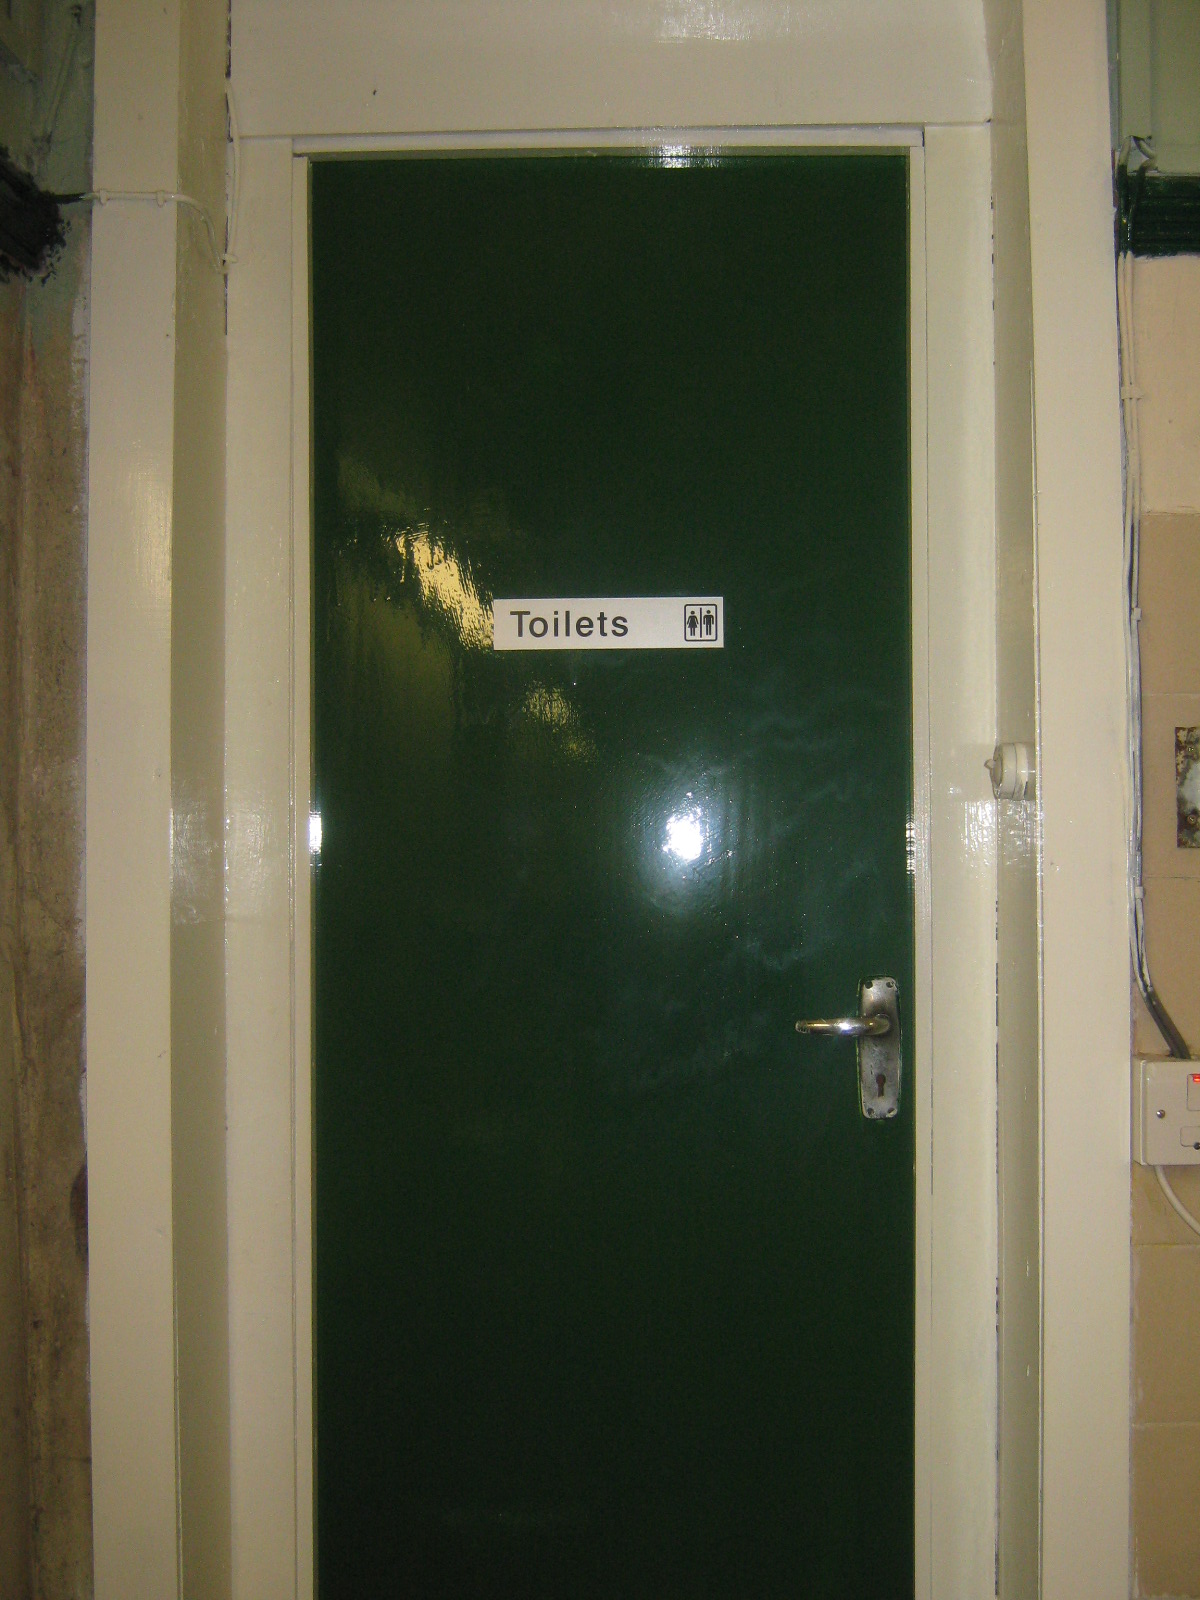 toilet-door-goes-green